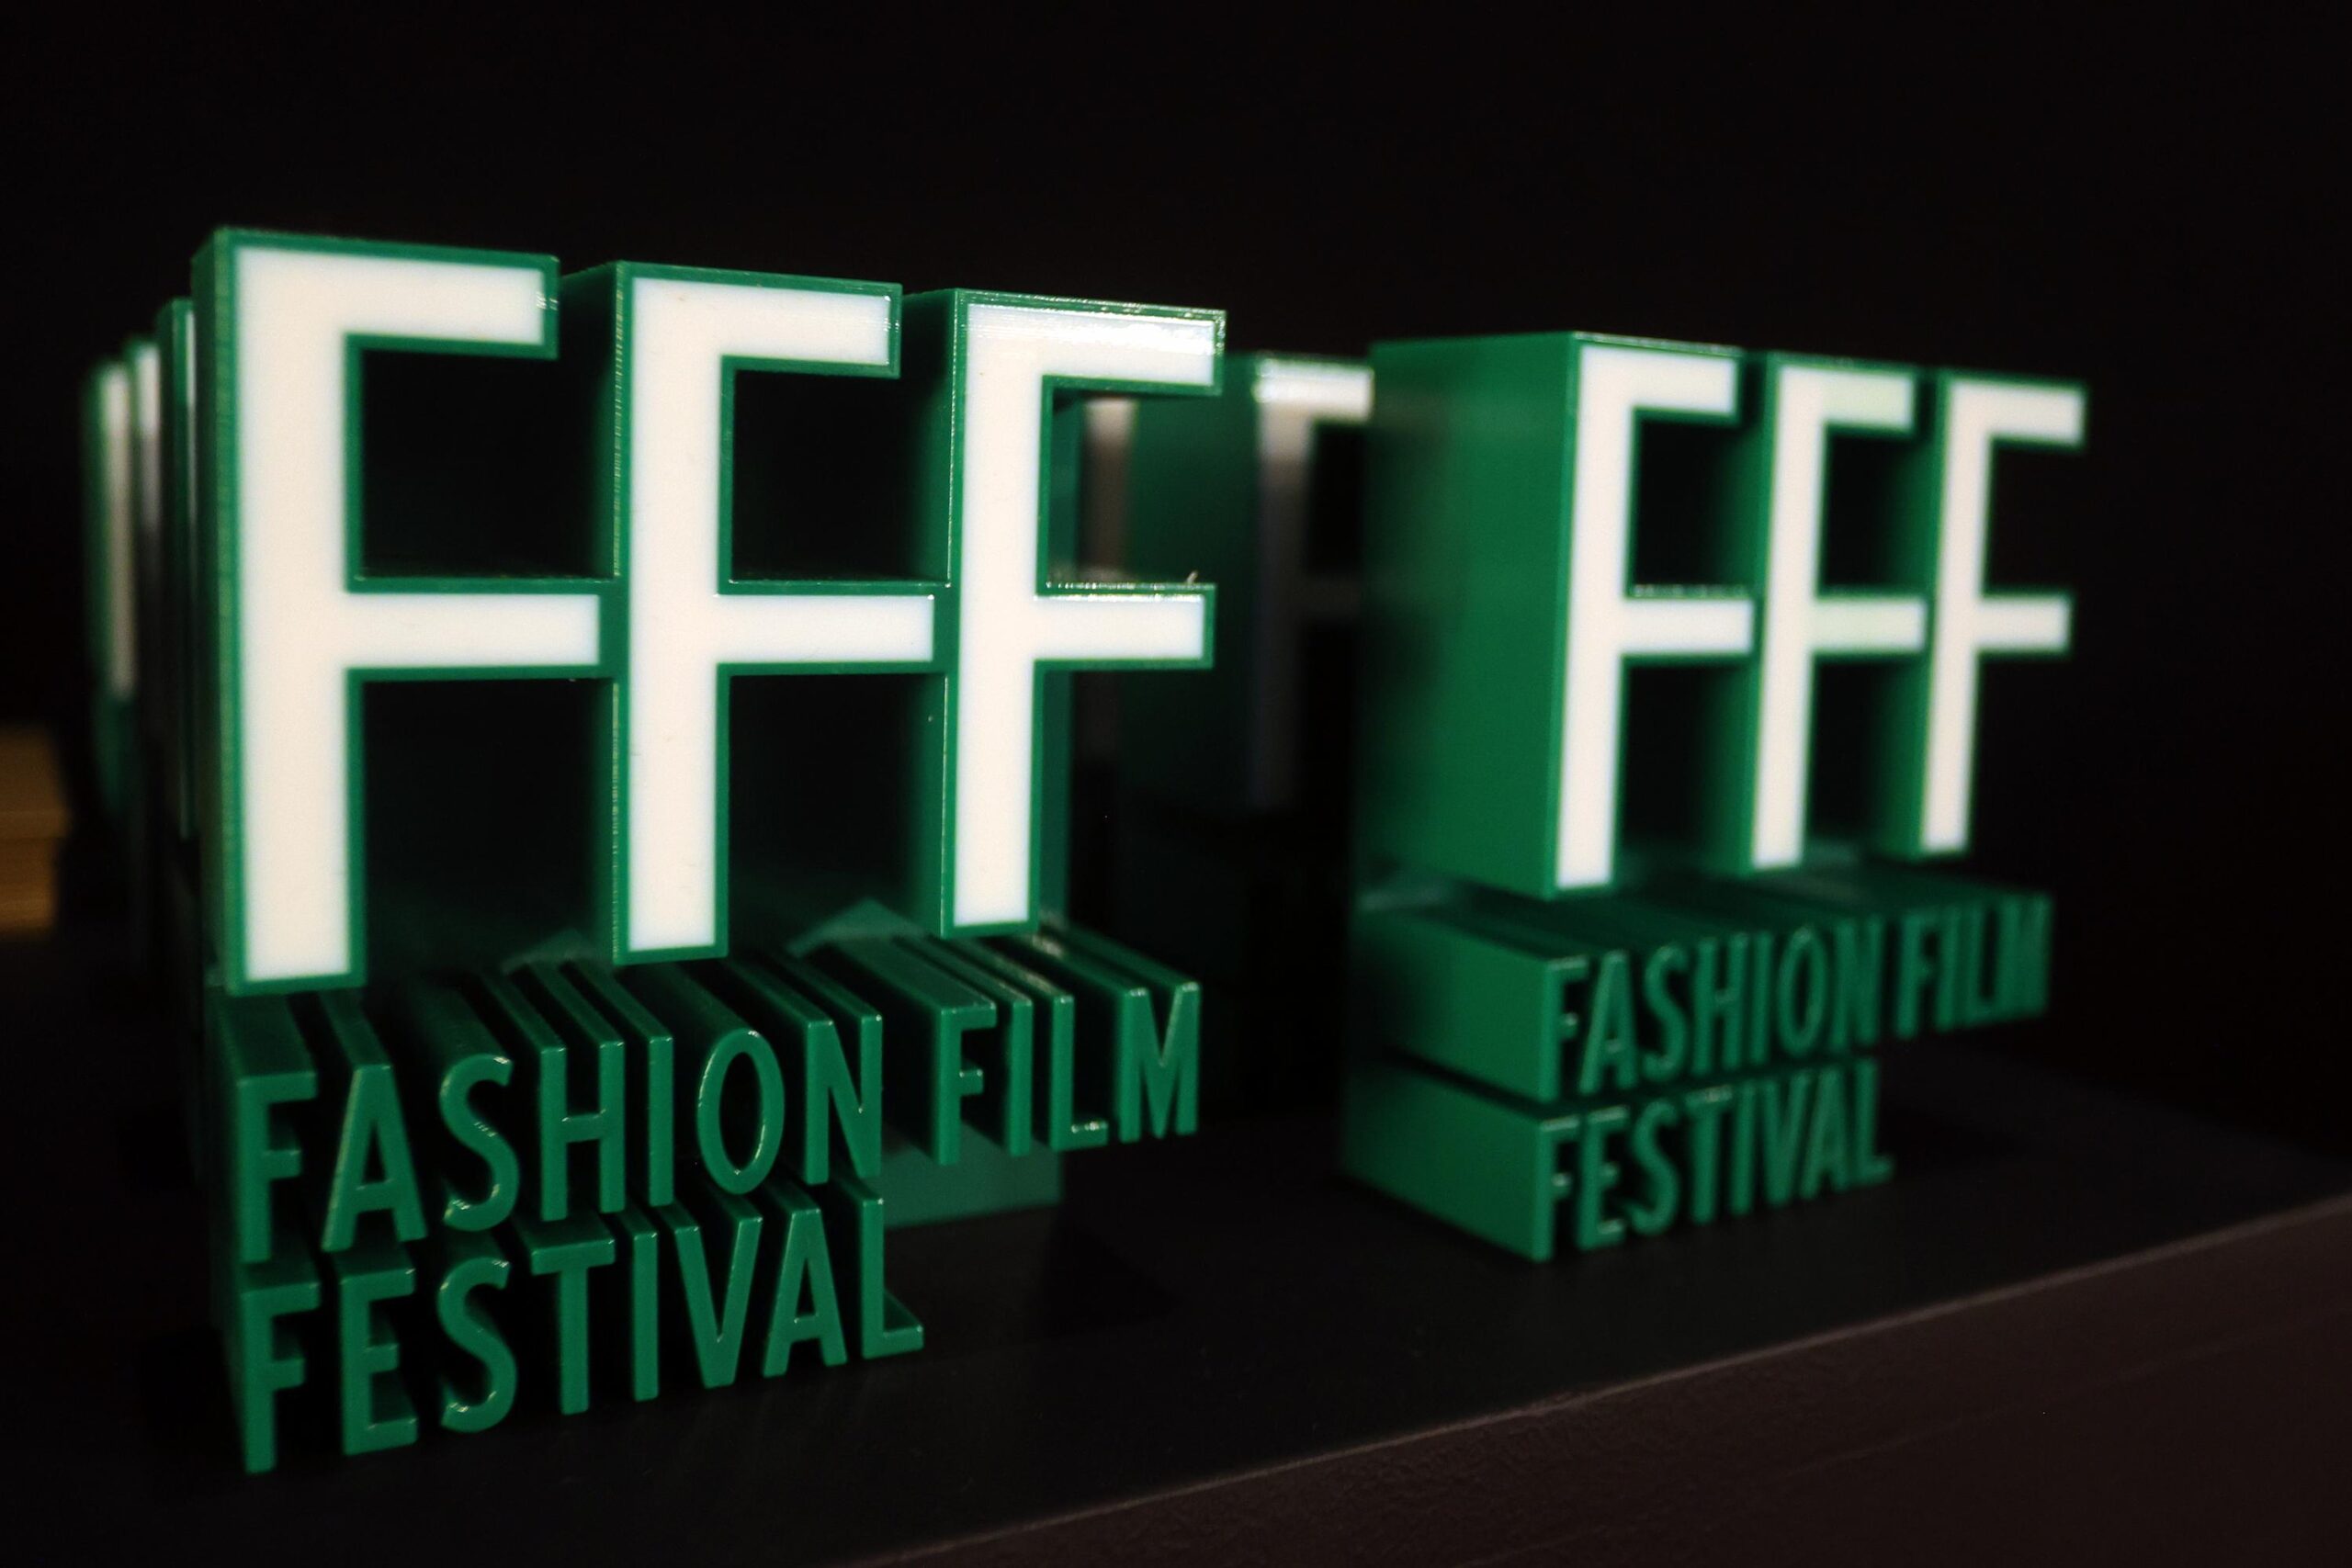 Fashion Film Festival 2020